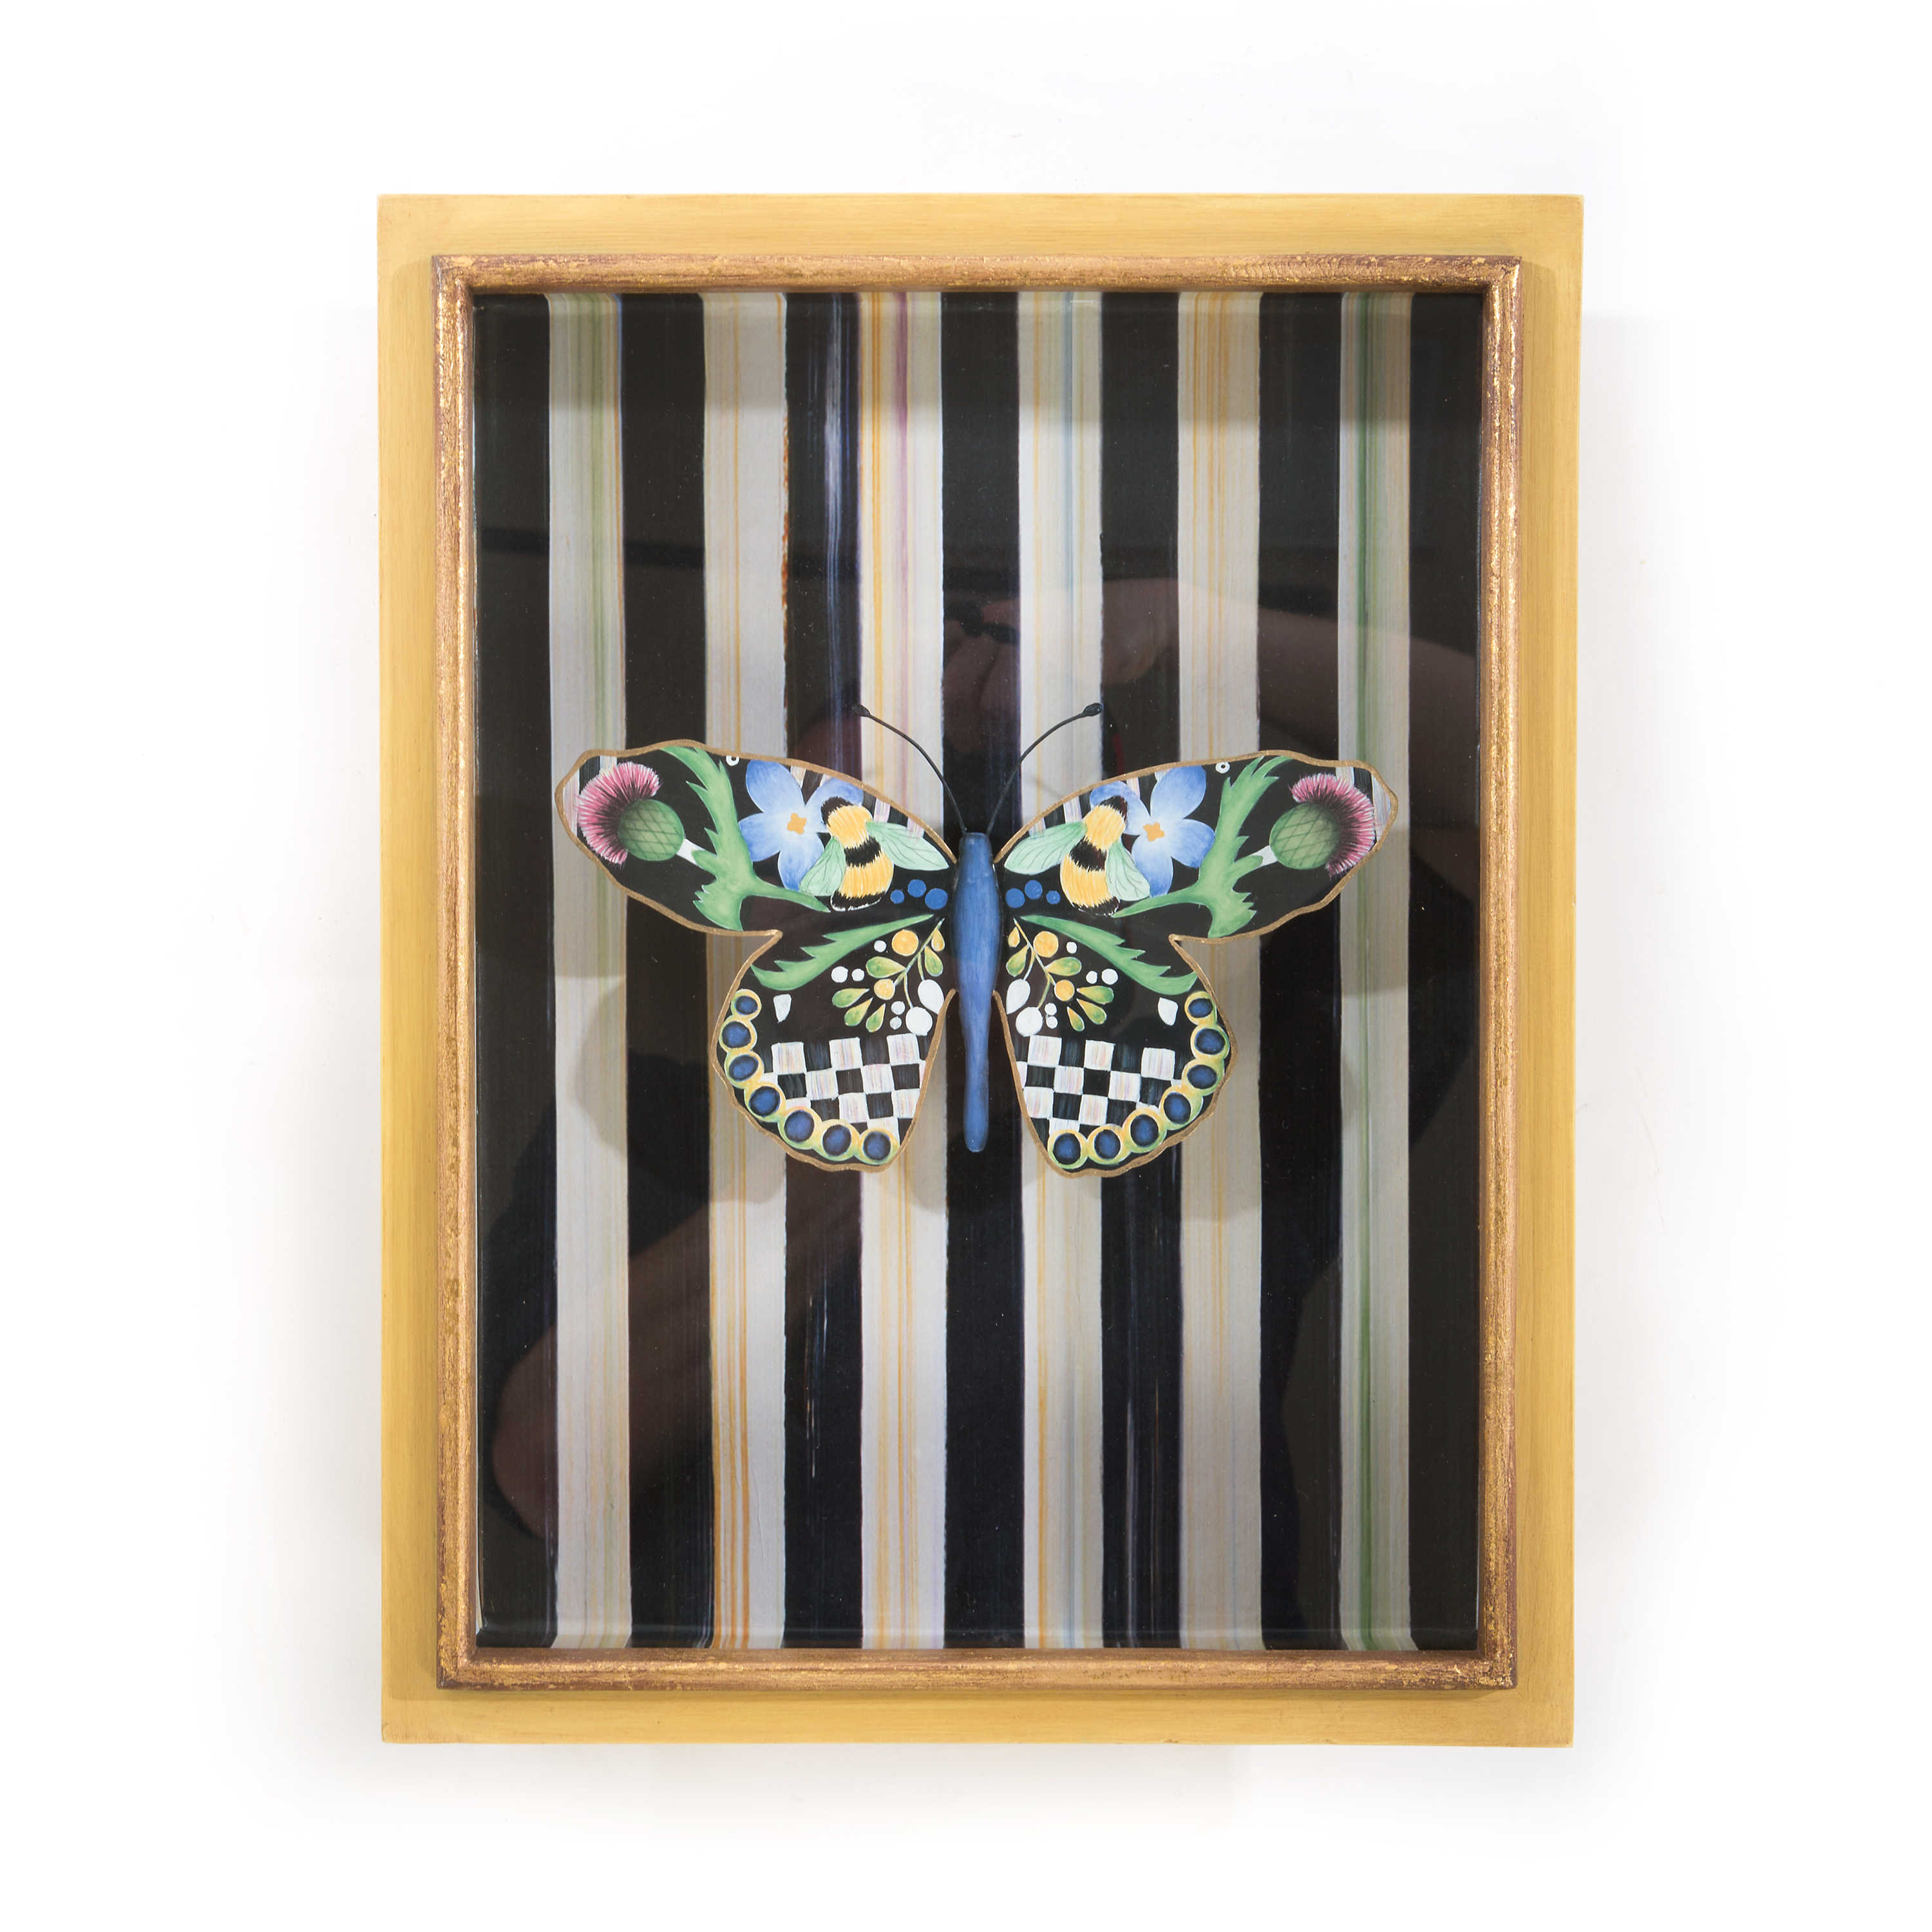 Butterfly Shadow Box mackenzie-childs Panama 0